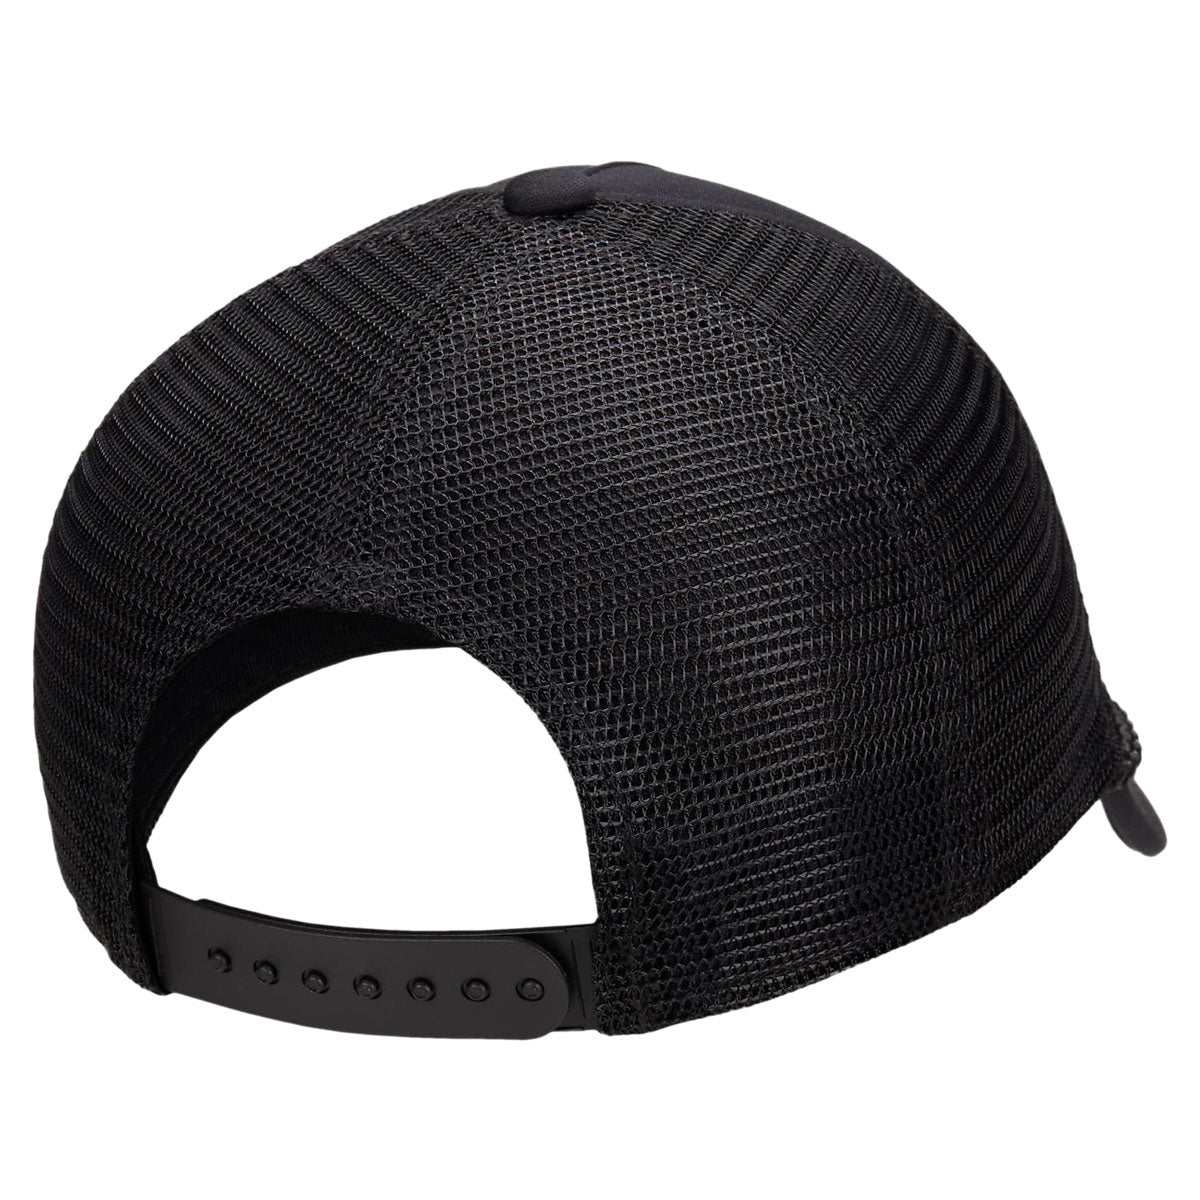 Nike Dri-FIT Rise Hat - Black/Black/Black image 2